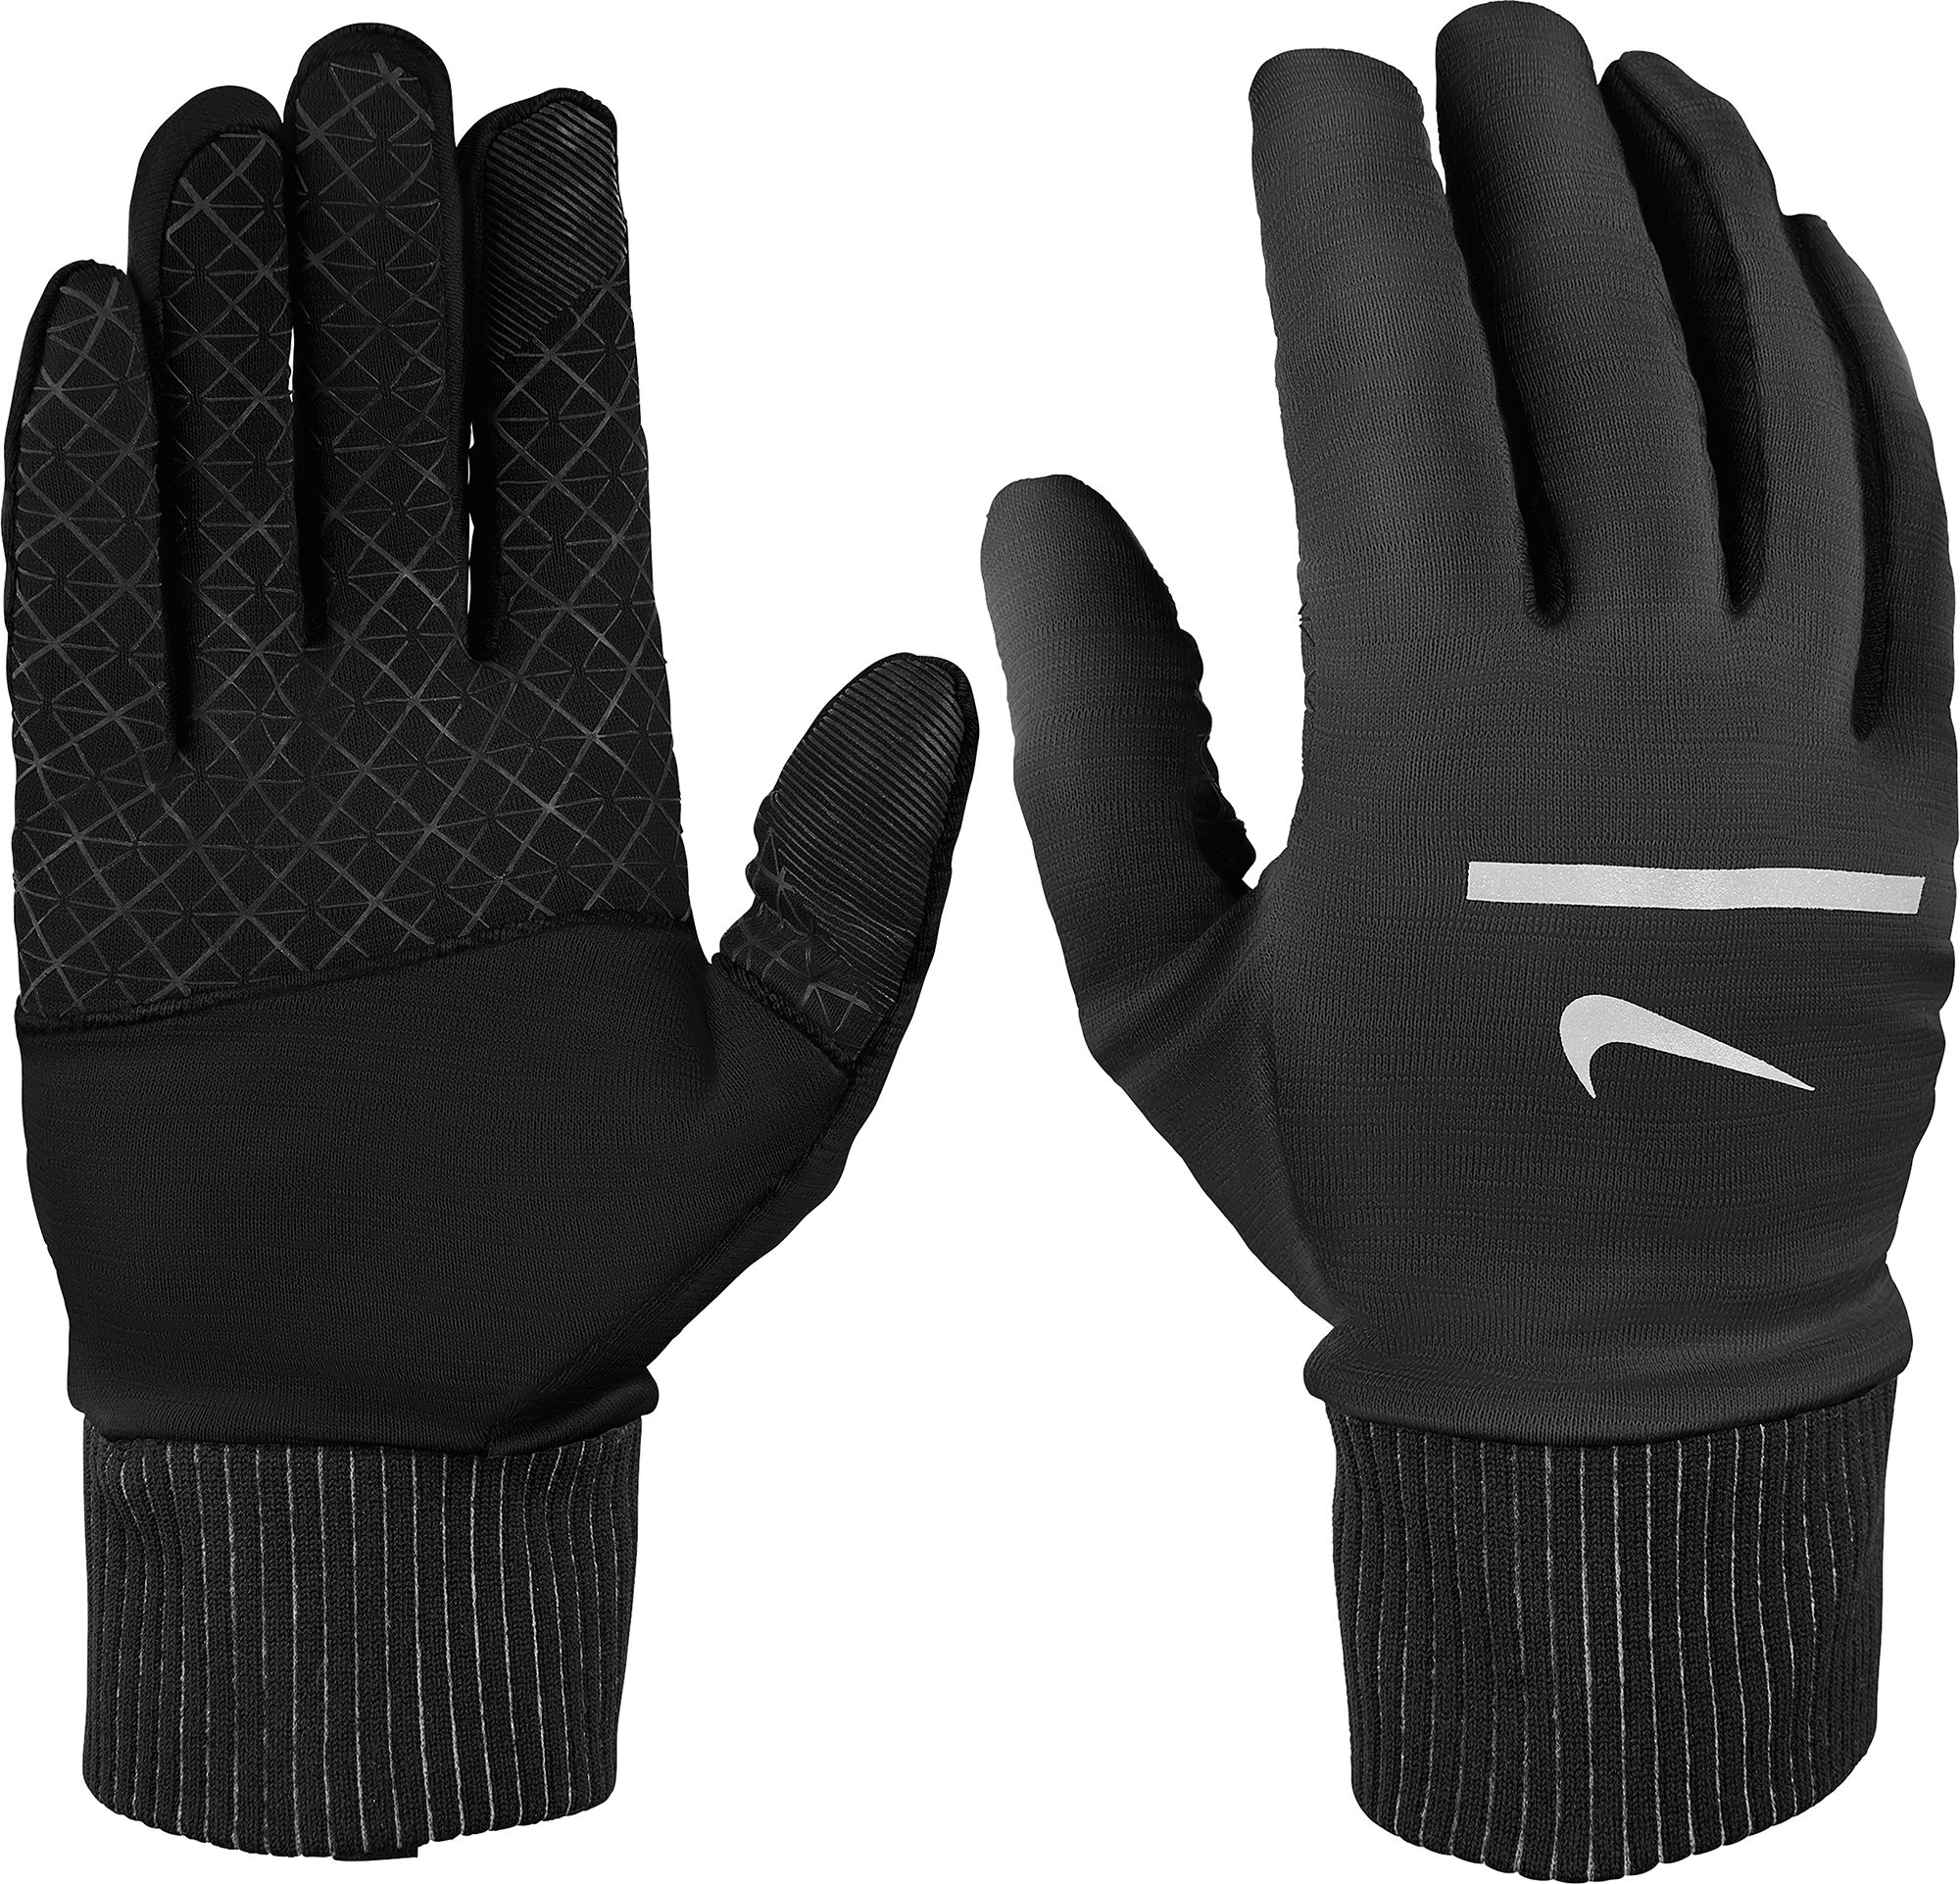 nike men's winter gloves